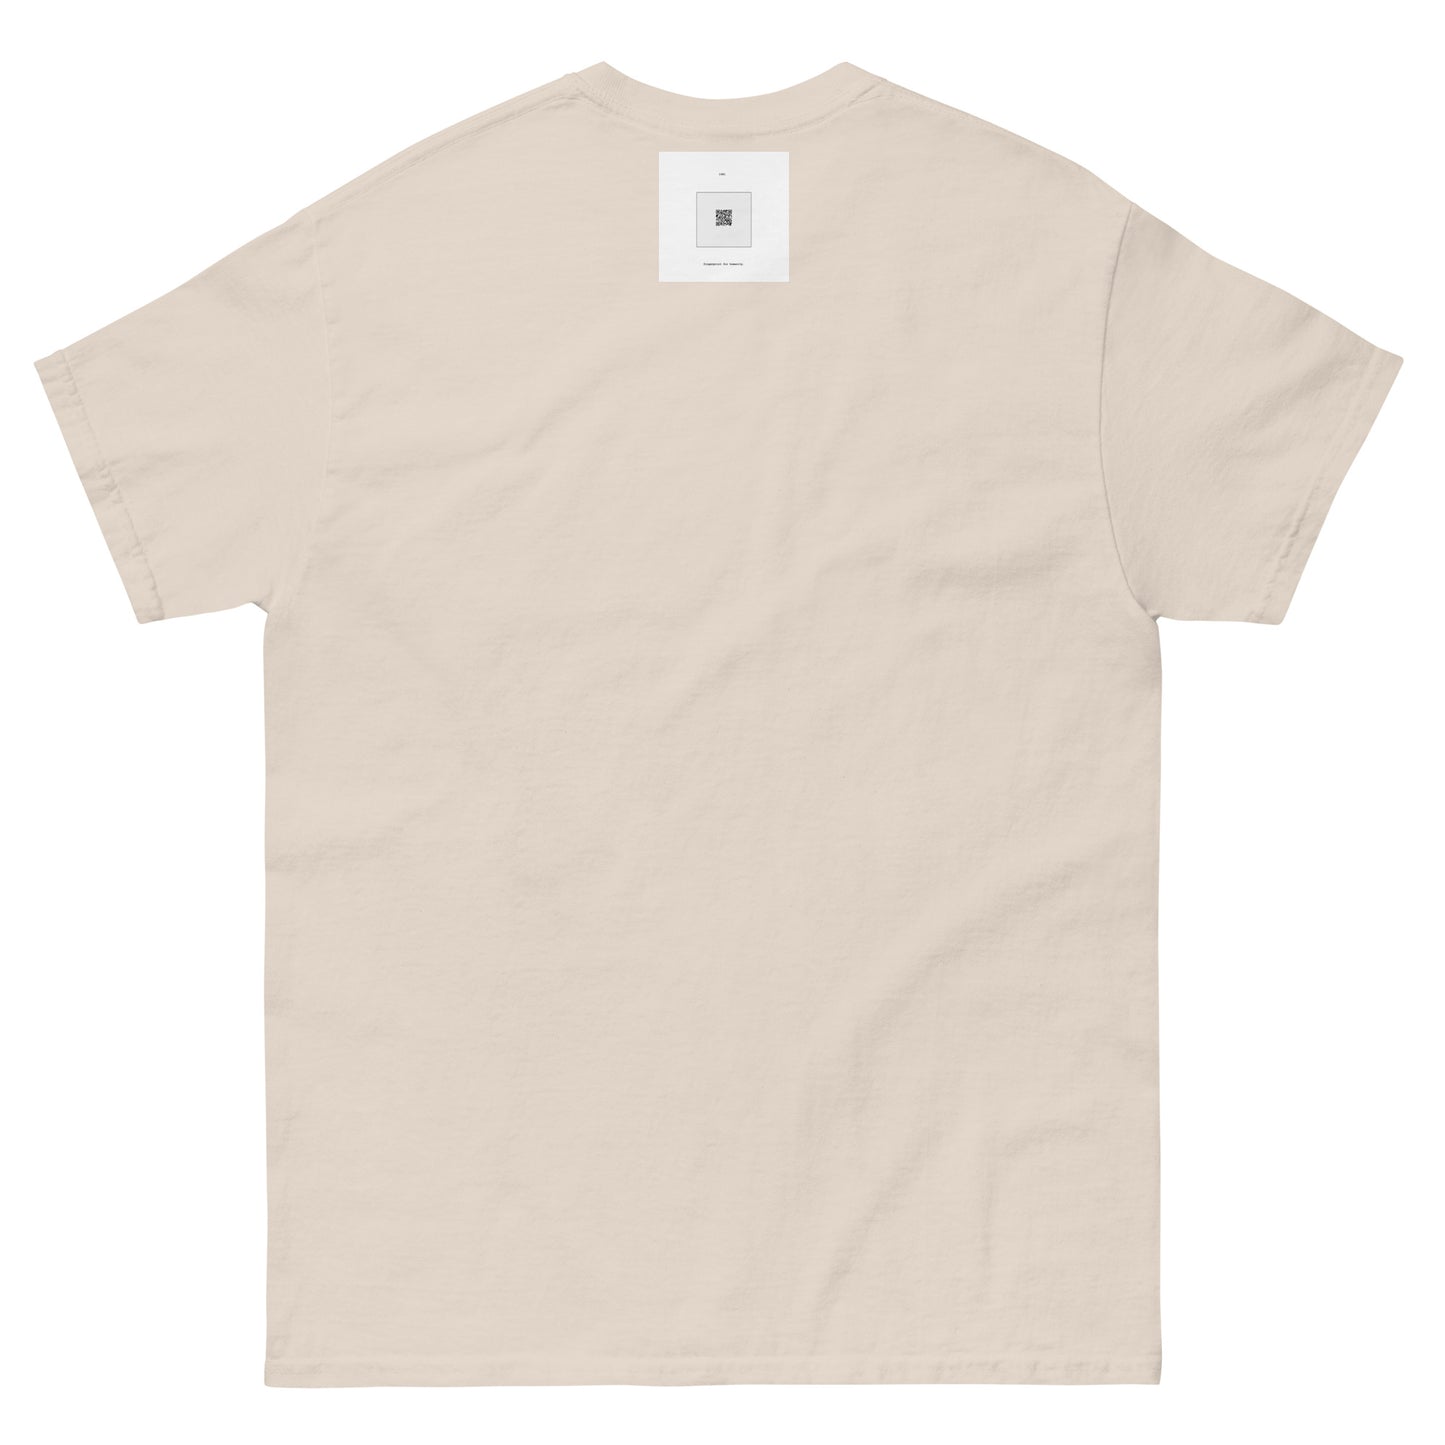 Cabella Beatrixes | Beige T-shirt | Unisex